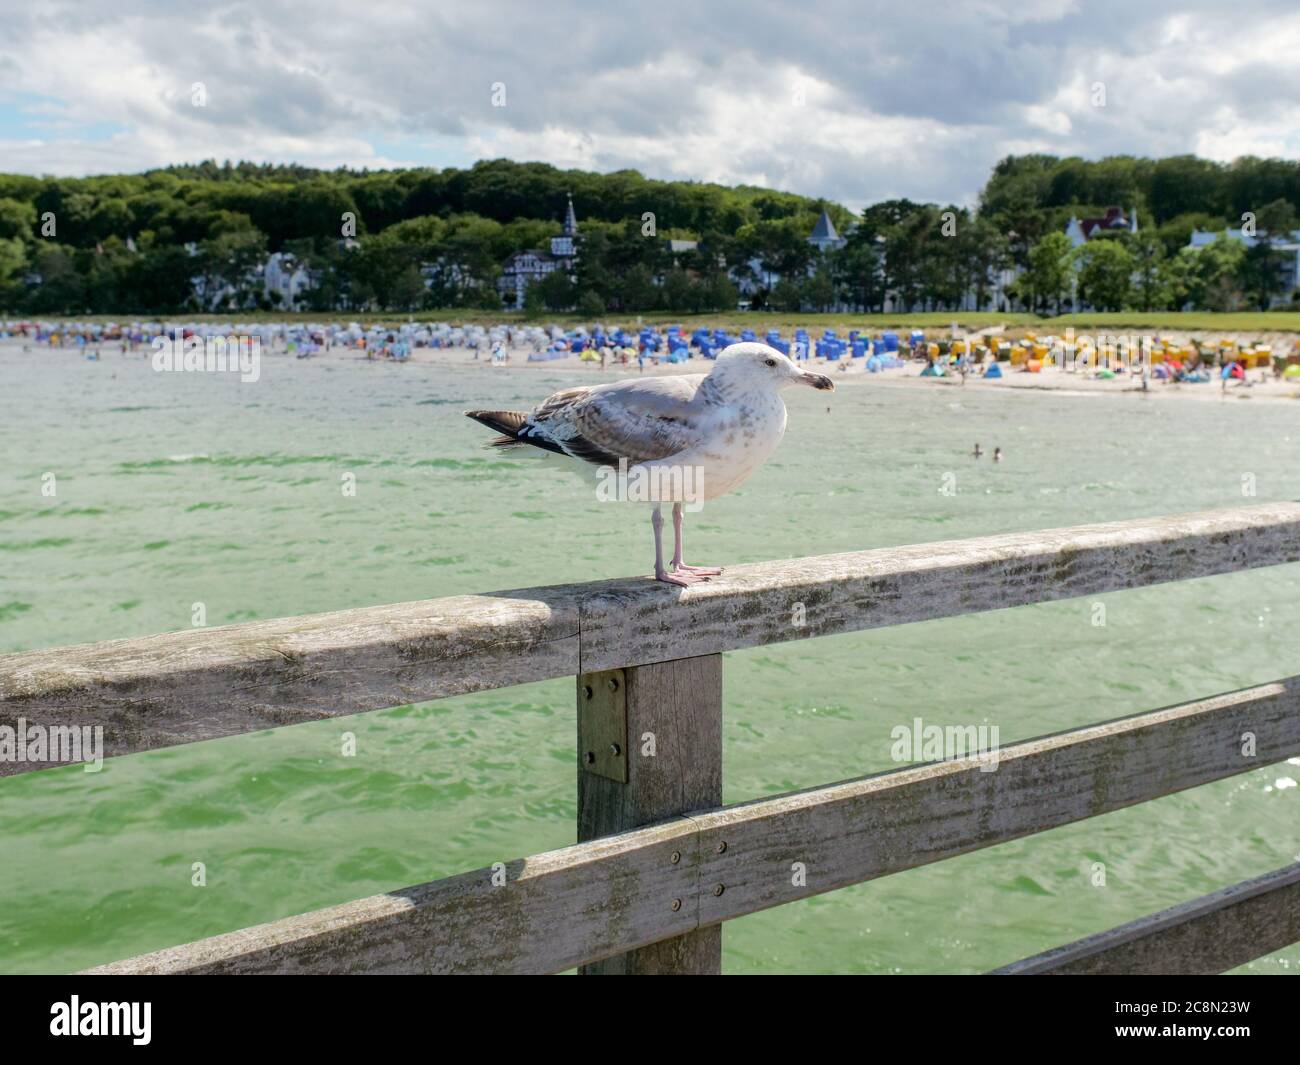 weiß-graue Möwe auf der Seebrücke in Binz wartend und beobachtend Eismöwe Ostsee Insel Rügen mit Strand und Touristen im Hintergrund Foto Stock